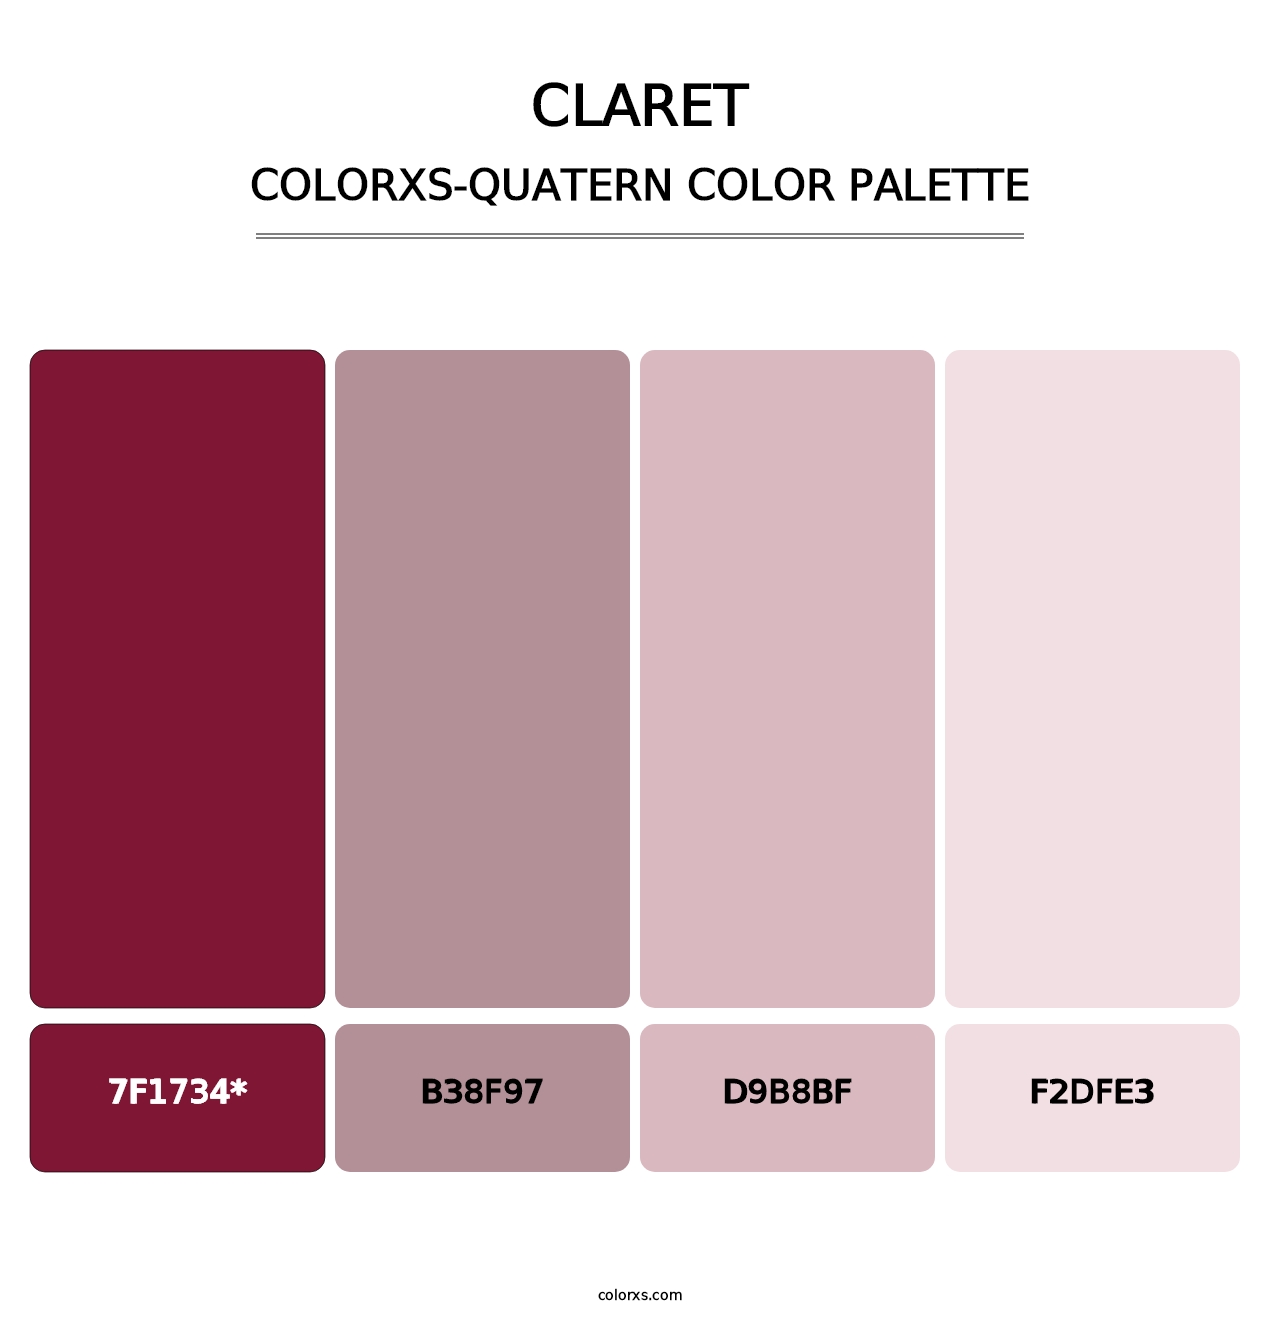 Claret - Colorxs Quatern Palette